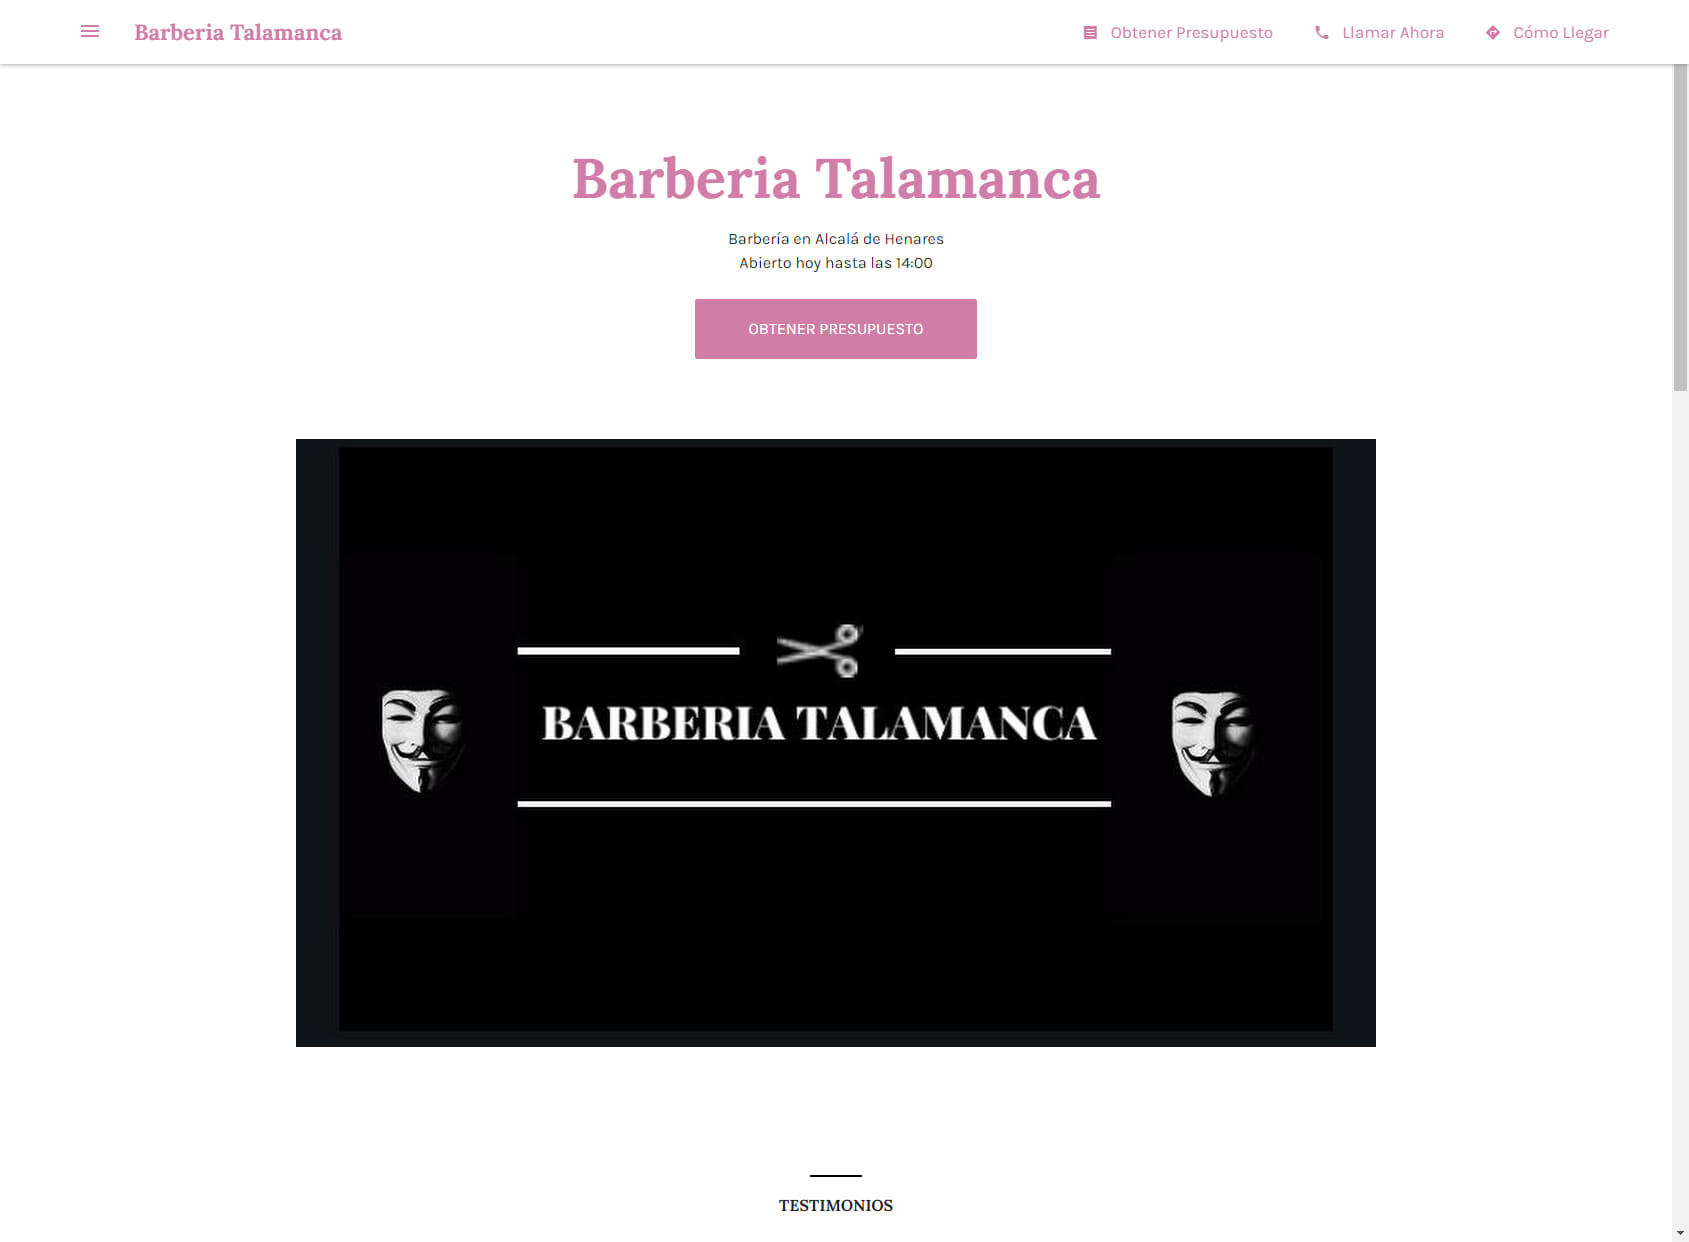 Barberia Talamanca